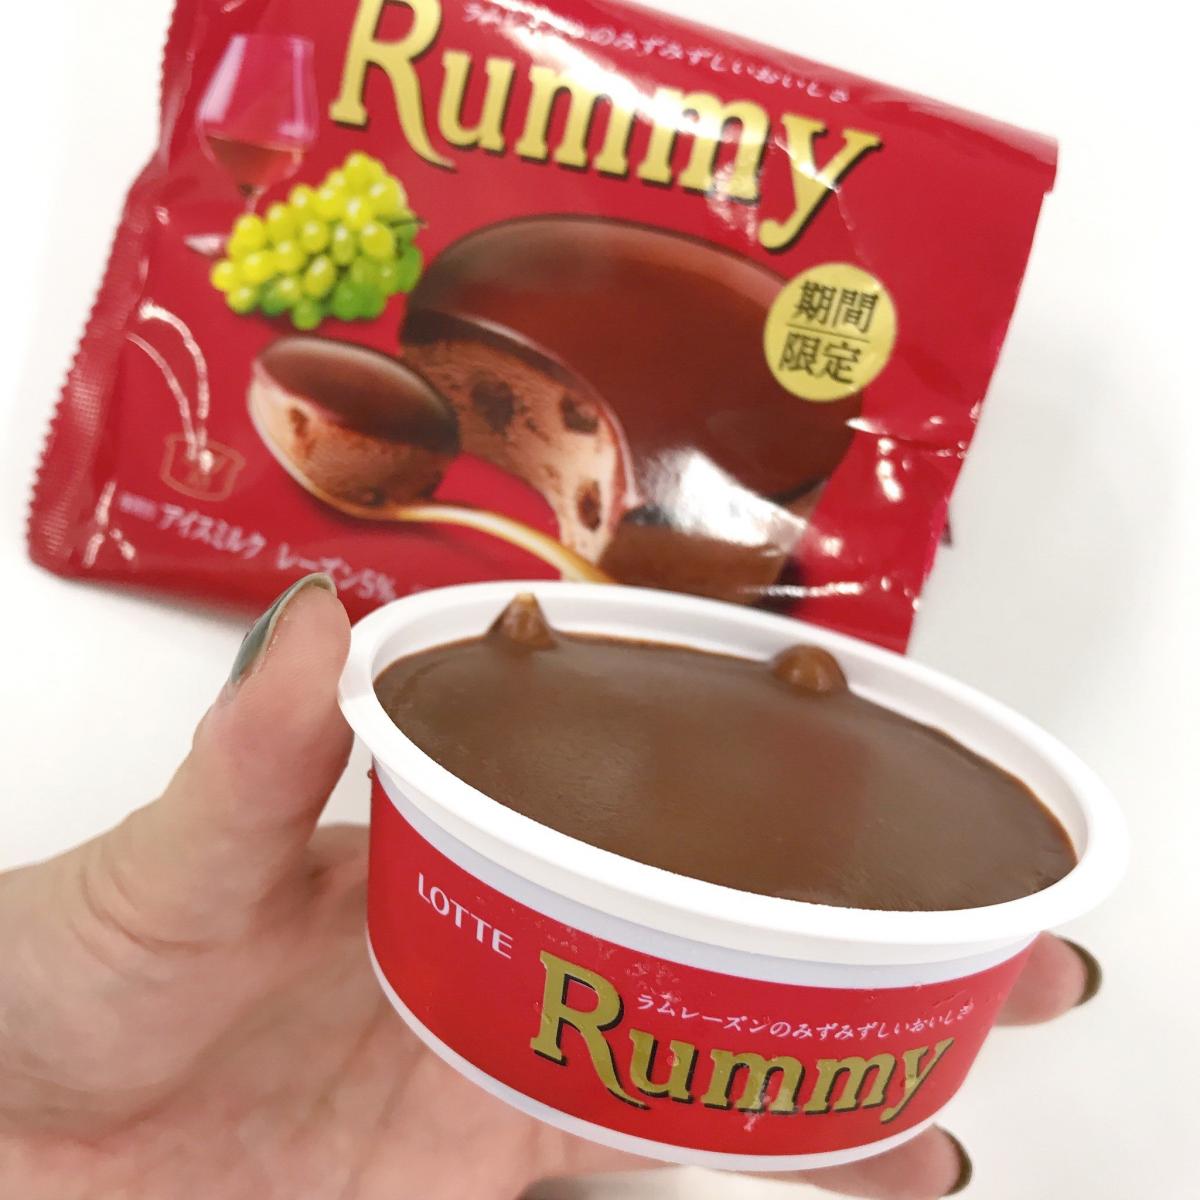 新商品レポ ロッテ ラミーチョコアイスを食べてみた 19 9 23発売